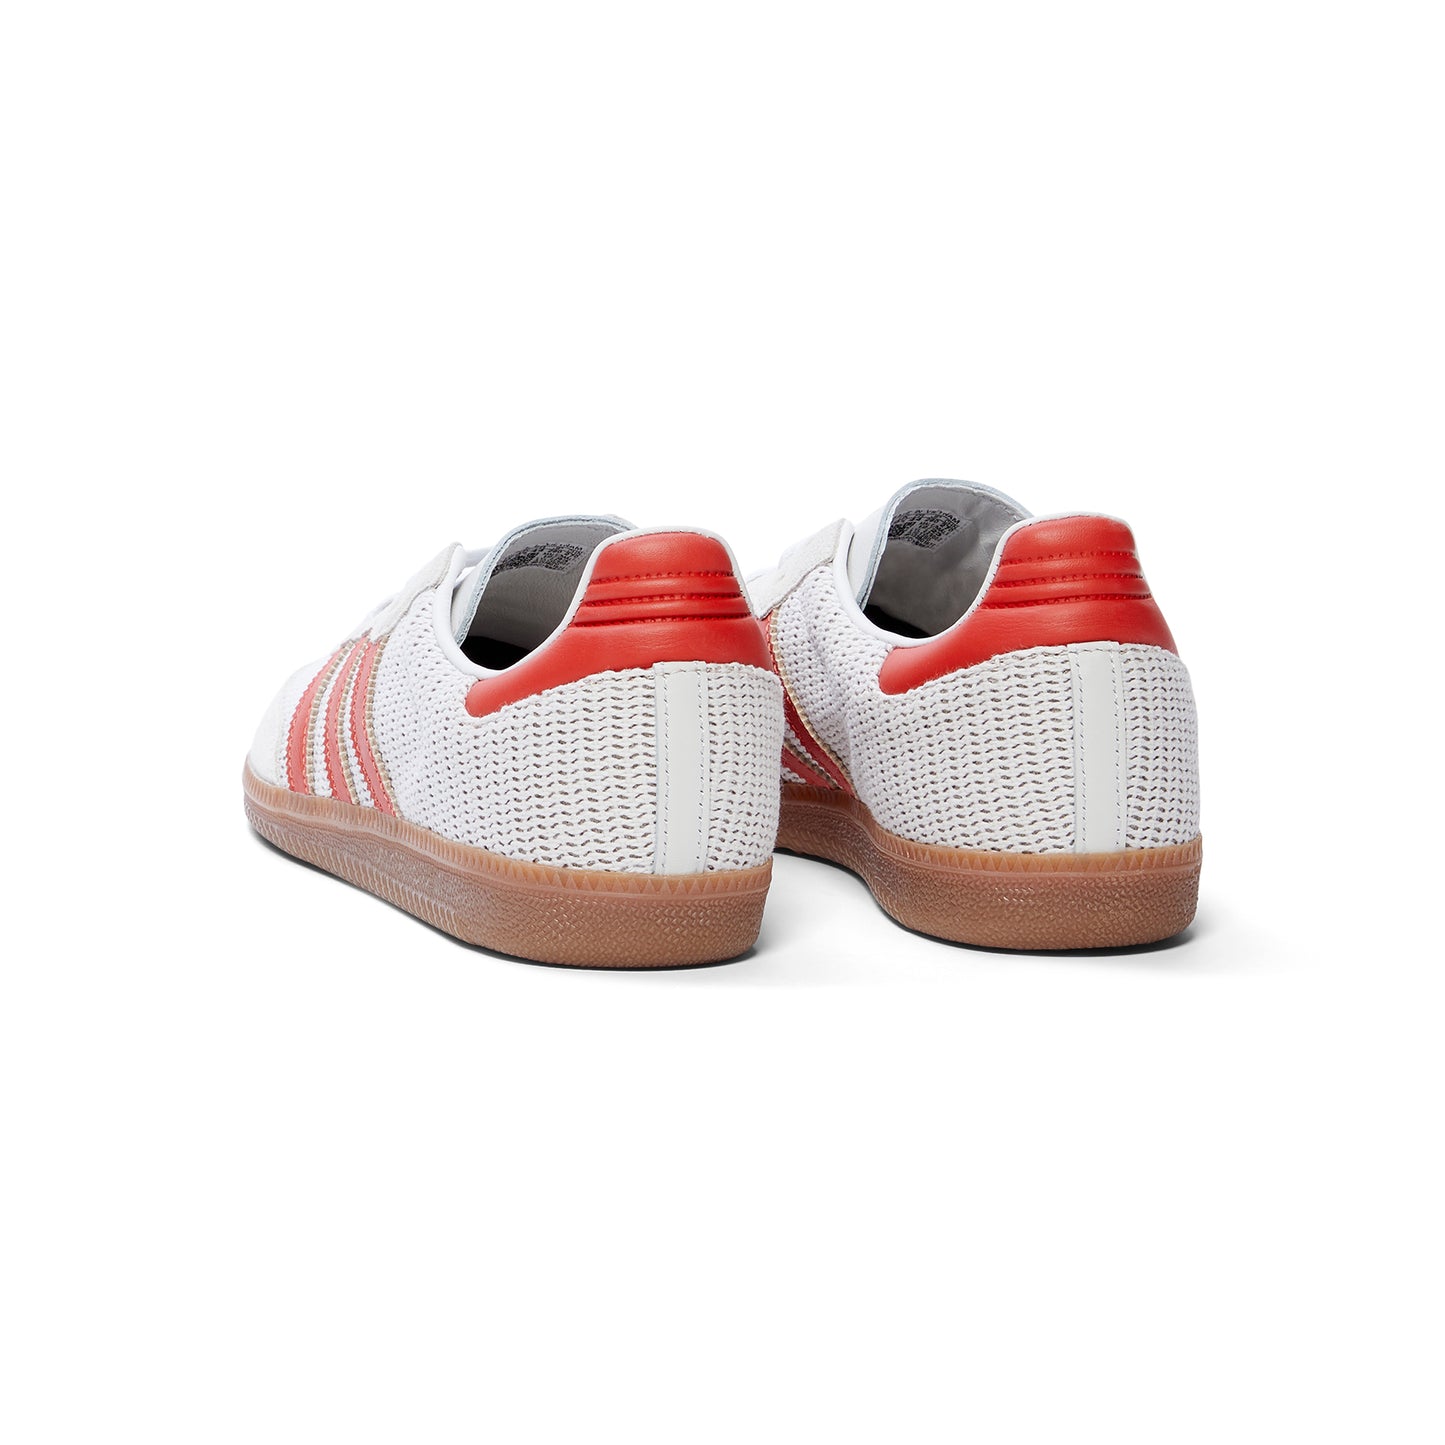 Adidas Samba OG (Crystal White/Preloved Red/Gum)